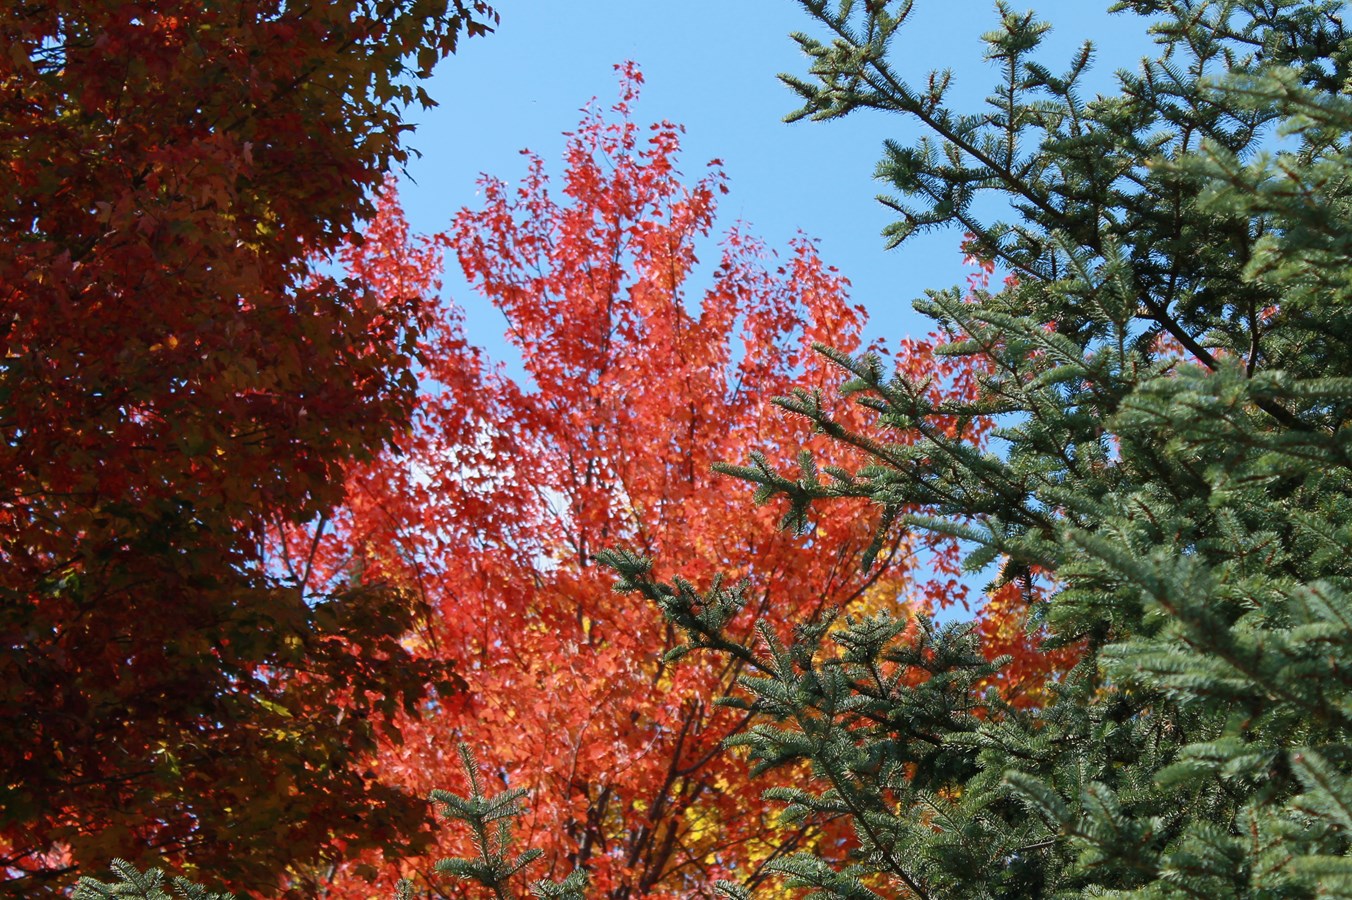 les belles couleurs de l'automne